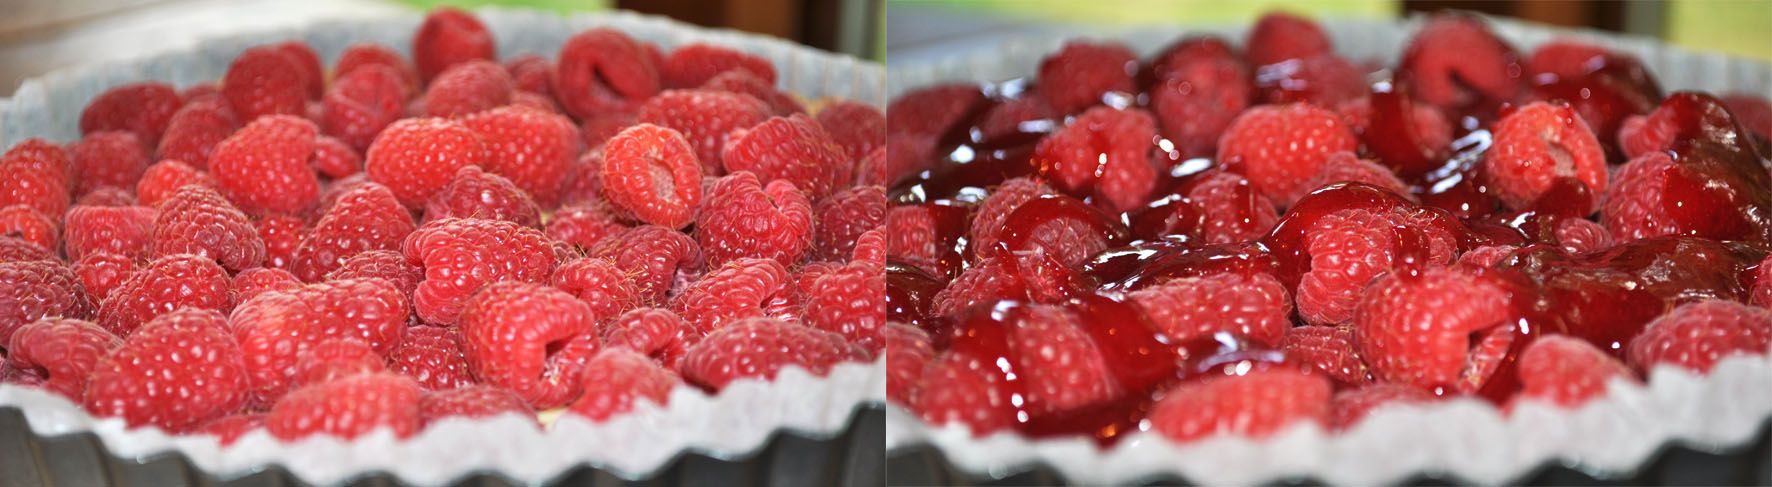 raspberry-lemonade-summer-tart-0003